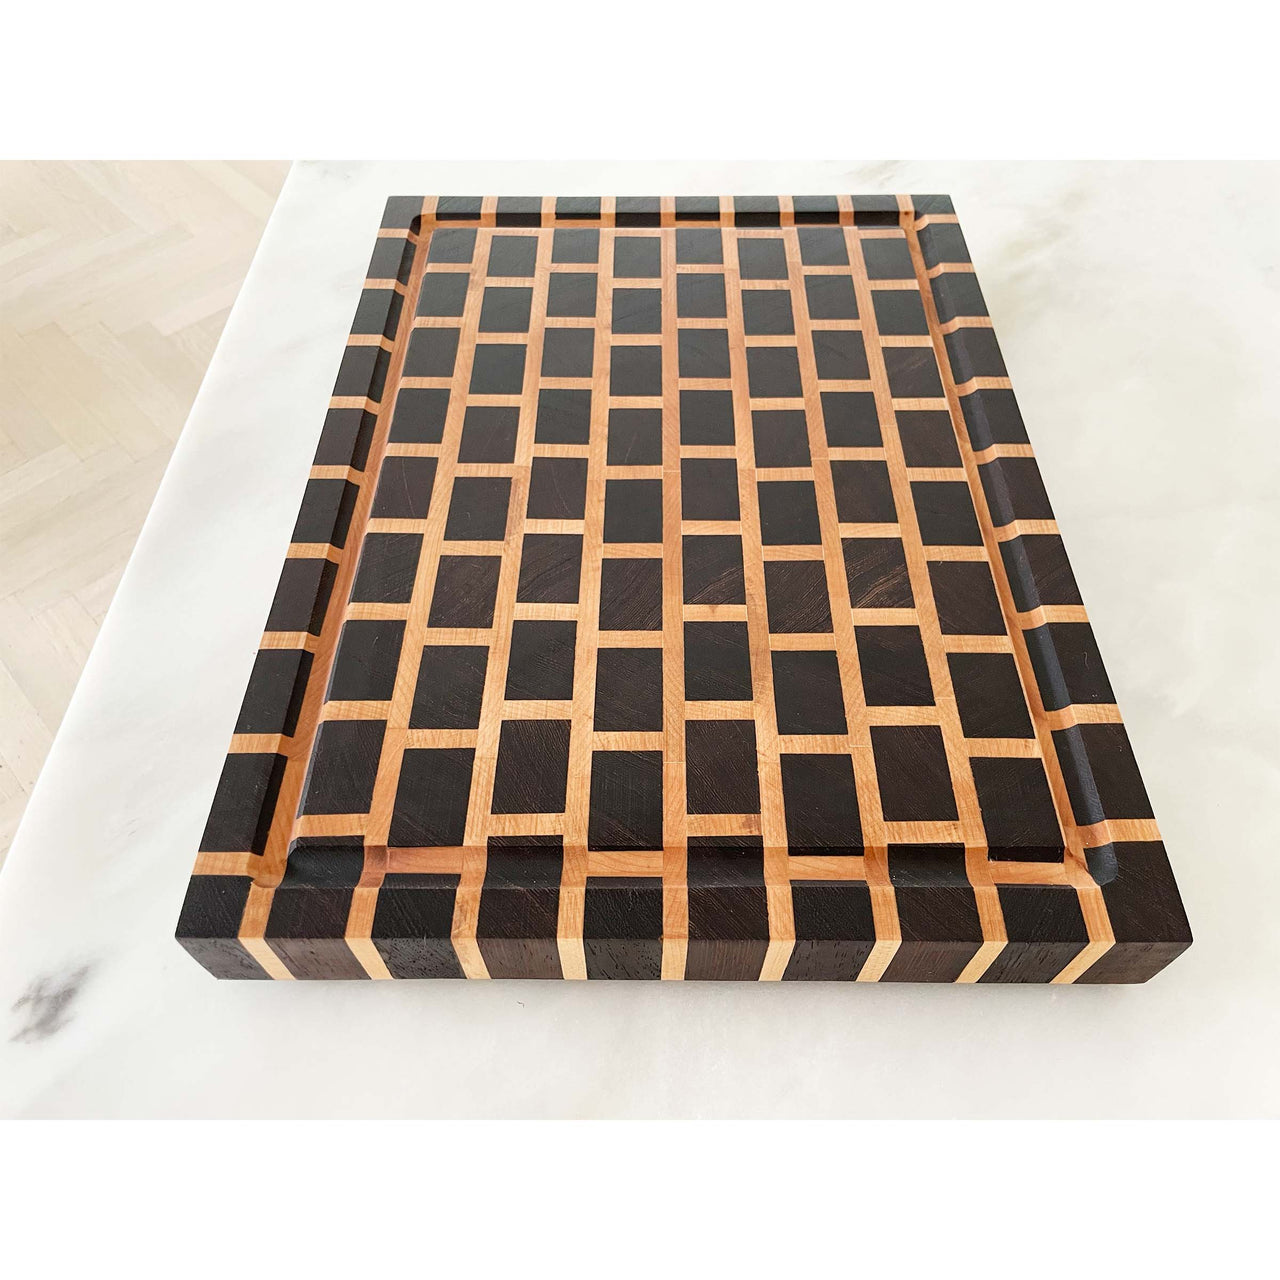 Wenge Wood + Maple End Grain Cutting Board "The Gormley" 15"L x 12"W x 1.5"H